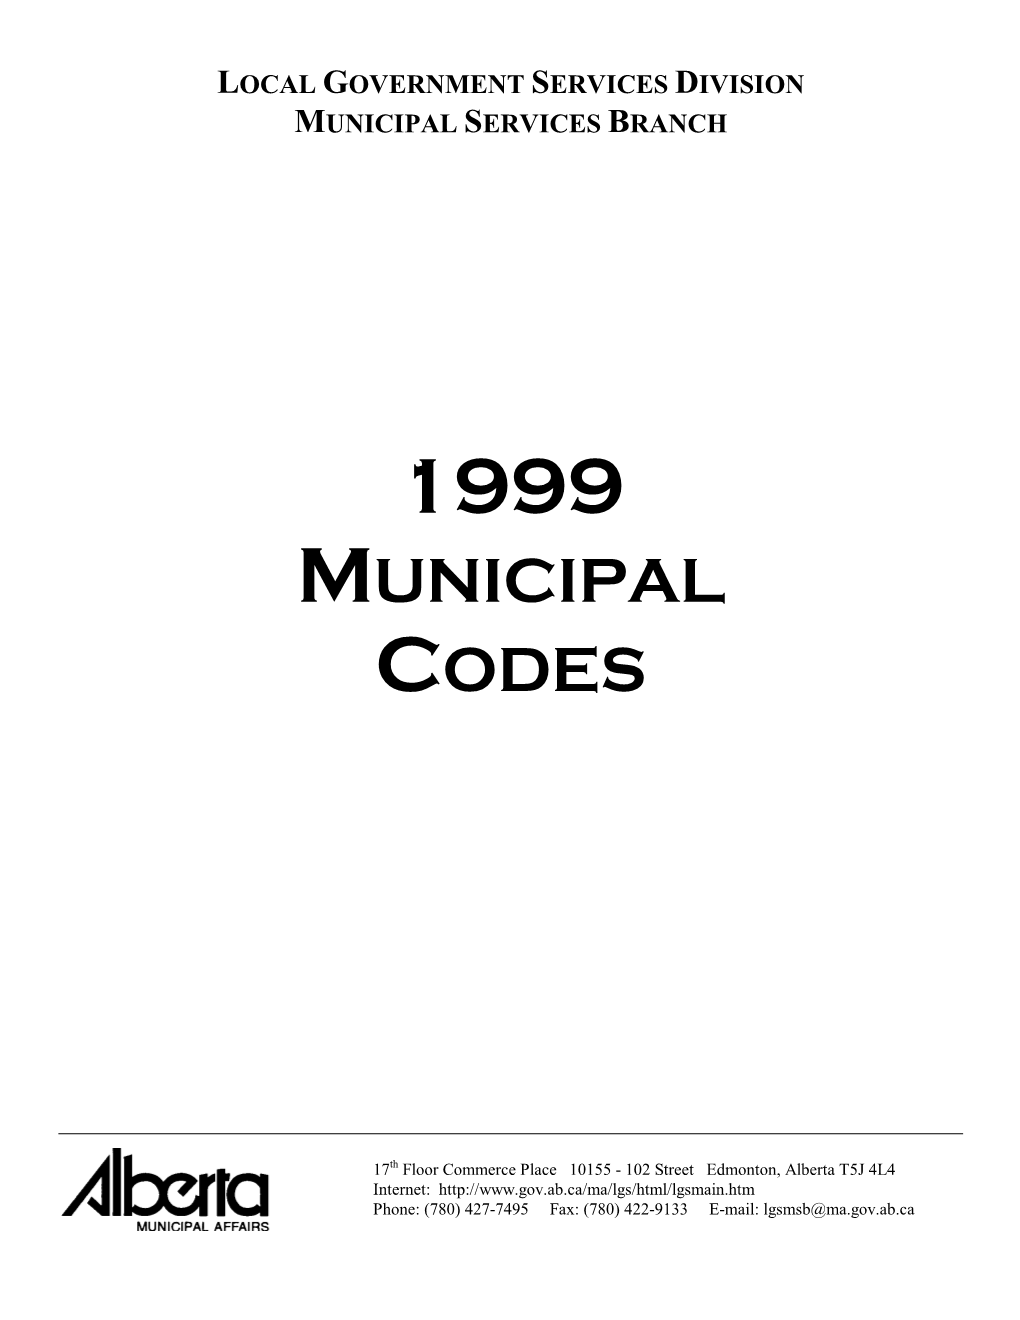 1999 Municipal Codes